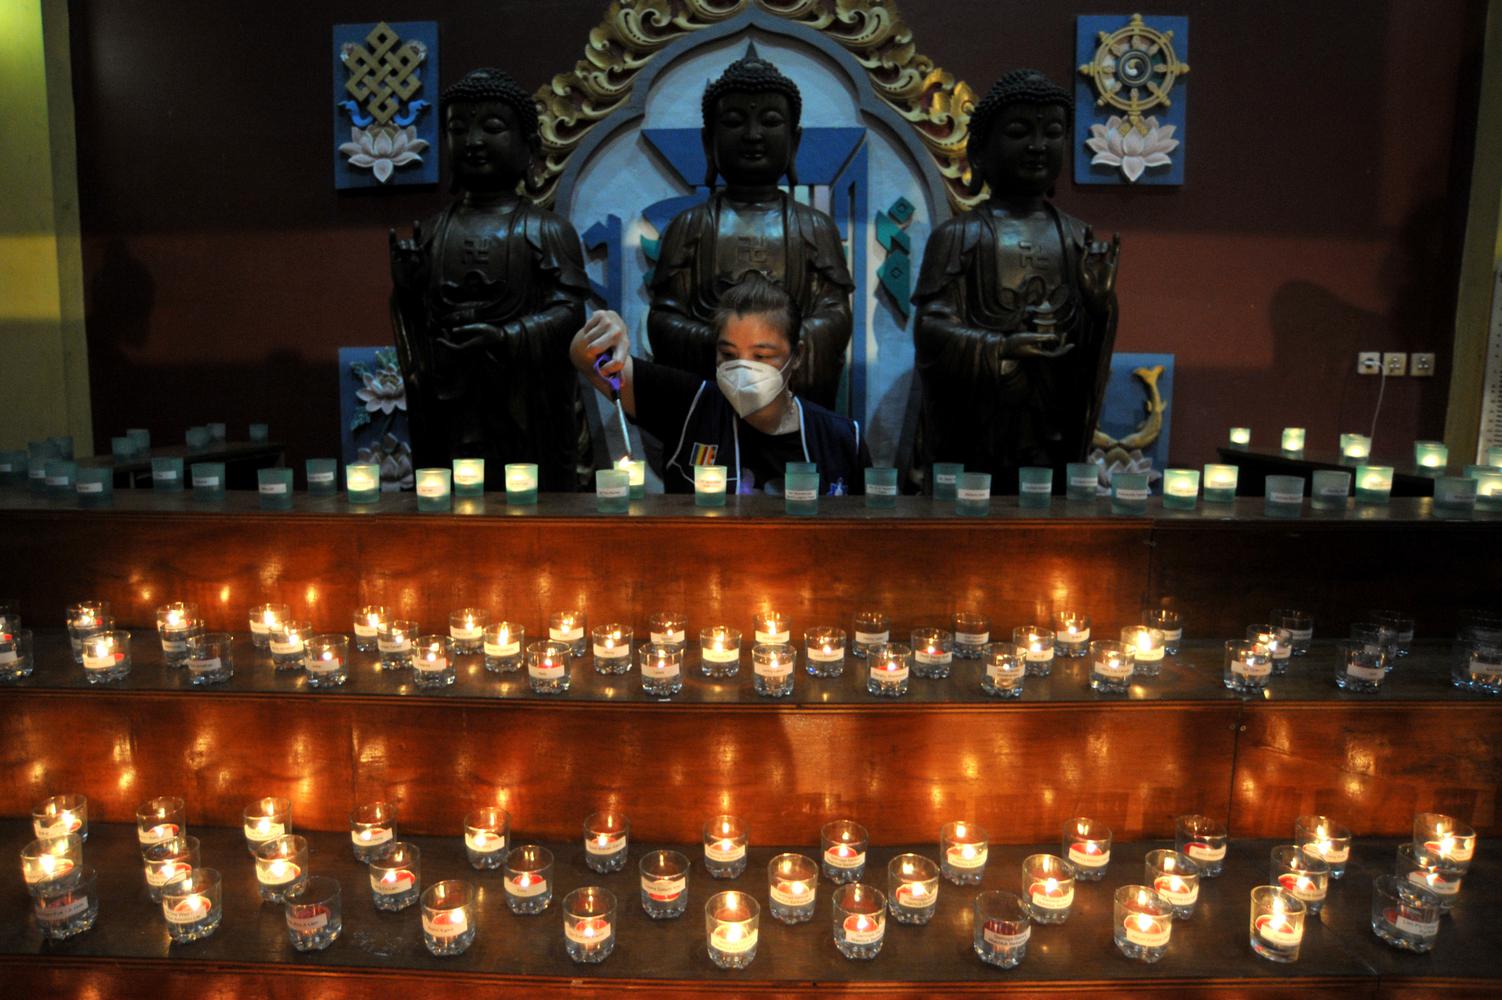 Umat Buddha menyalakan api pelita Waisak, di Vihara Buddha Dharma, Kuta, Bali, Selasa (25/5/2021). Penyalaan ratusan pelita tersebut dilakukan untuk menyambut peringatan Hari Tri Suci Waisak 2565 BE/2021.